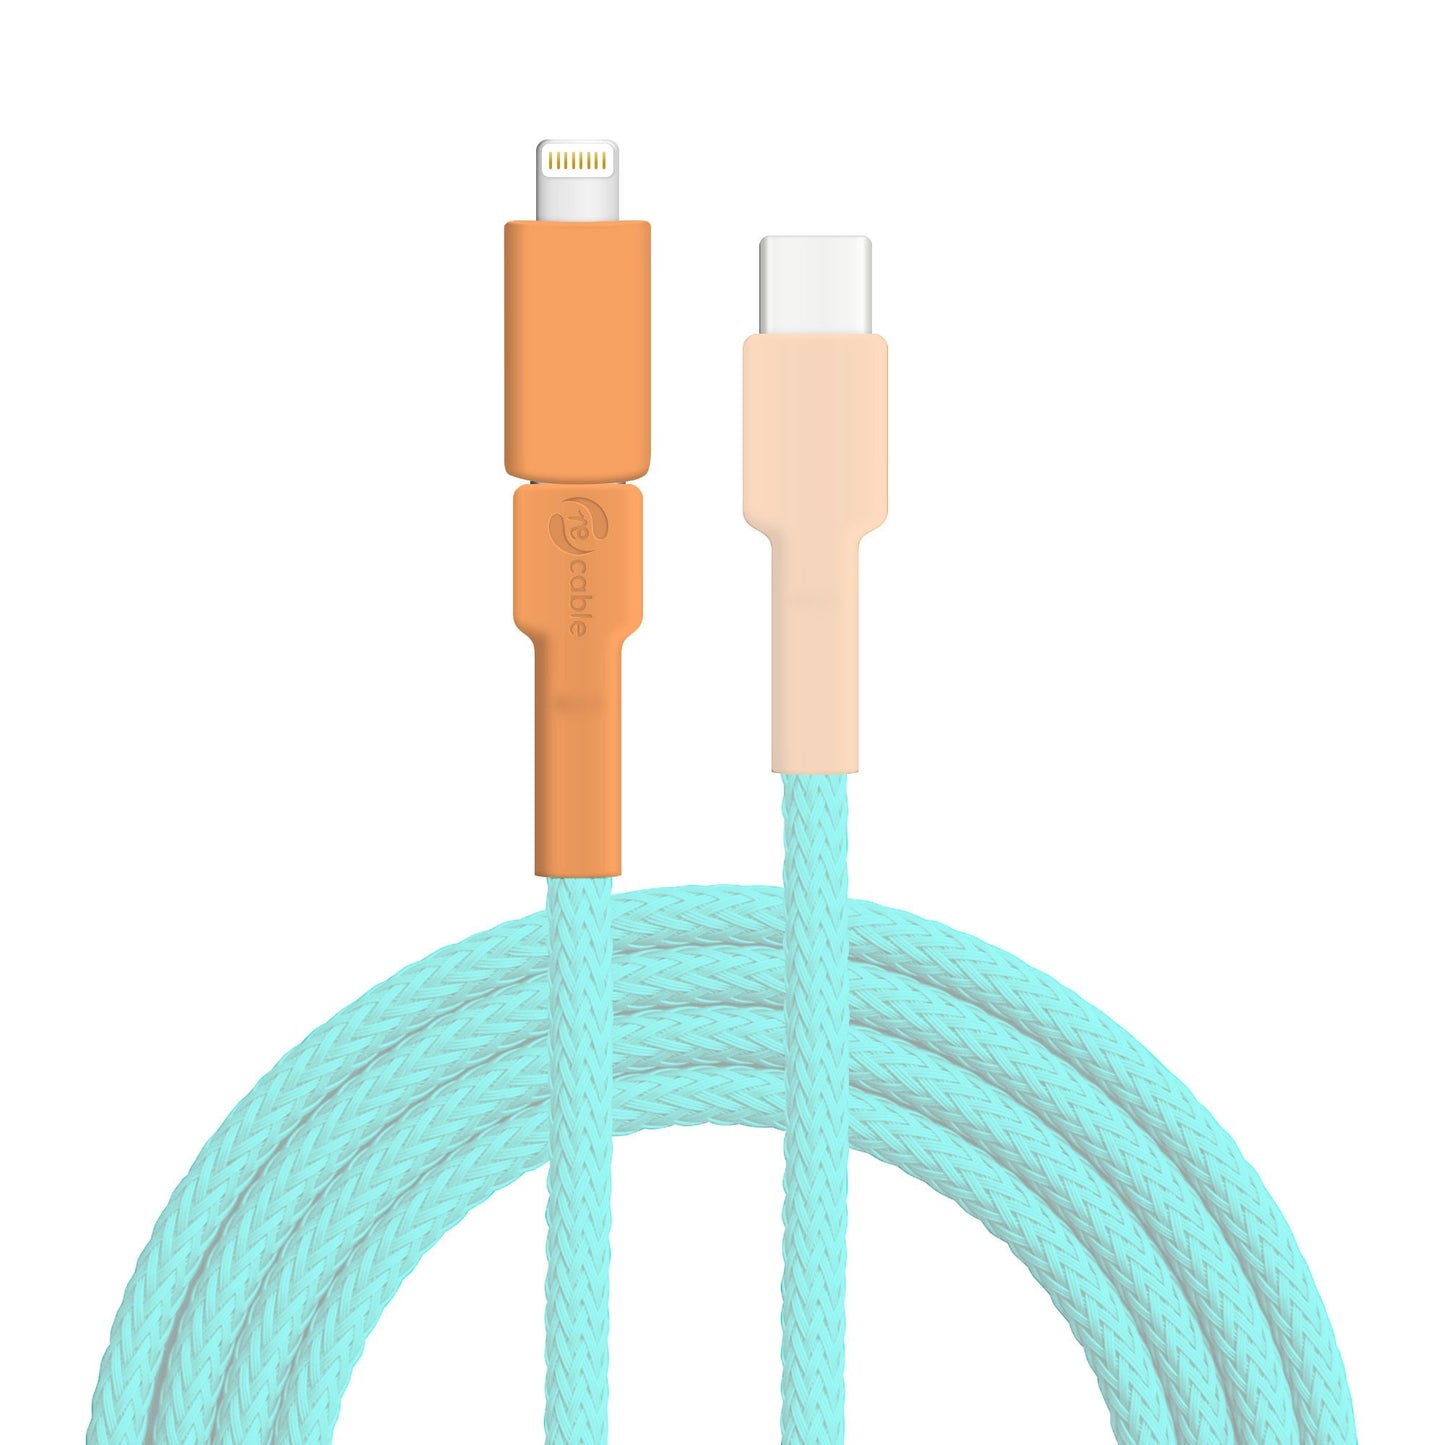 Micro USB Stecker und Lightning (iPhone) Adapter zur Erkennung des Ersatzteils hervorgehoben, das Kabel und der USB C Stecker sind ausgeblendet 